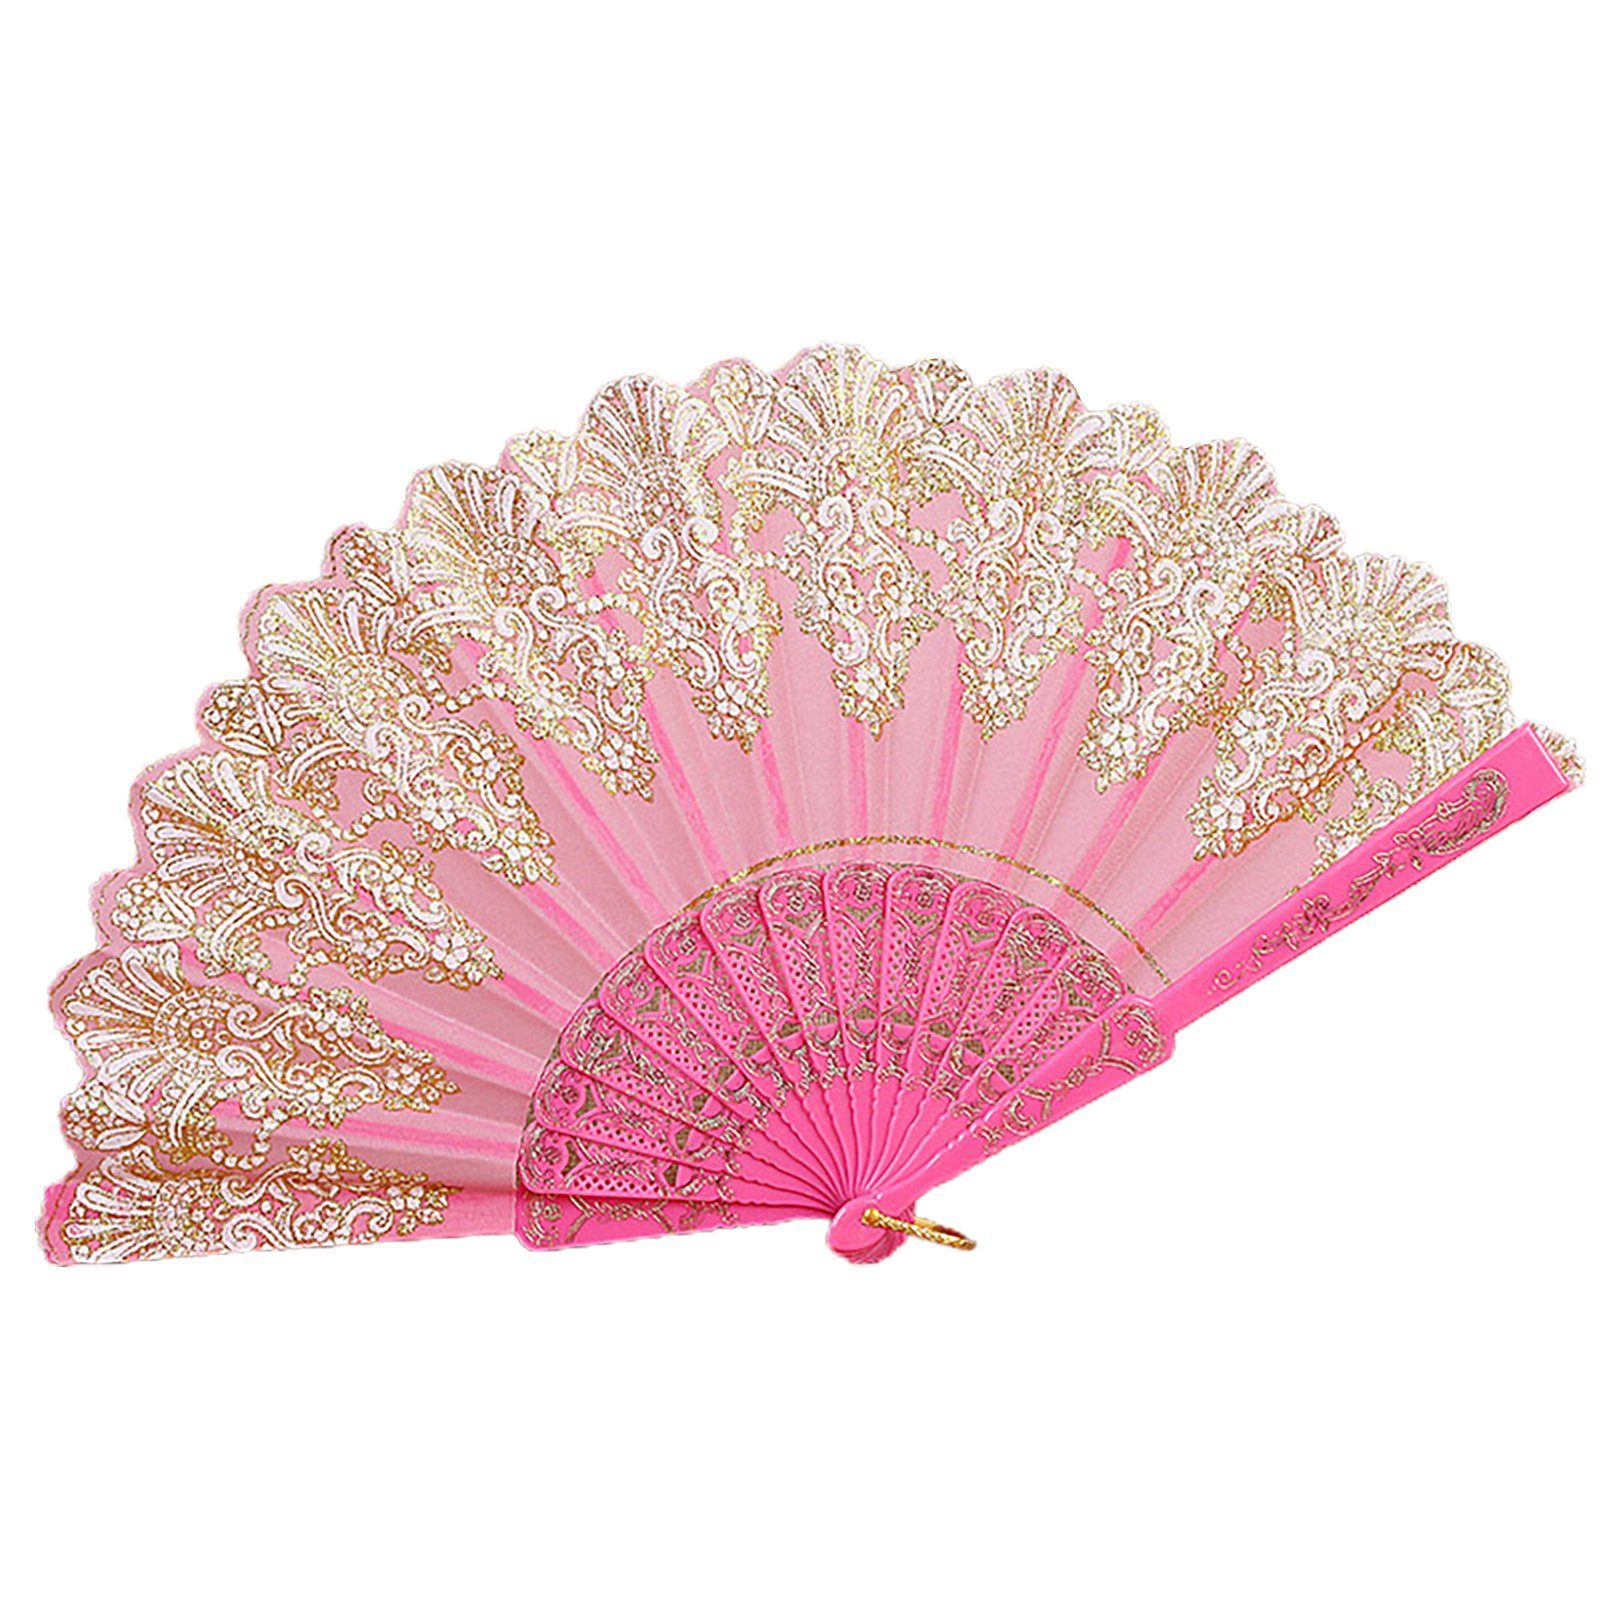 Rutaqian Handventilator Faltbarer Handfächer , Tanzparty Pink Vintage Für Handfächer Hochzeit